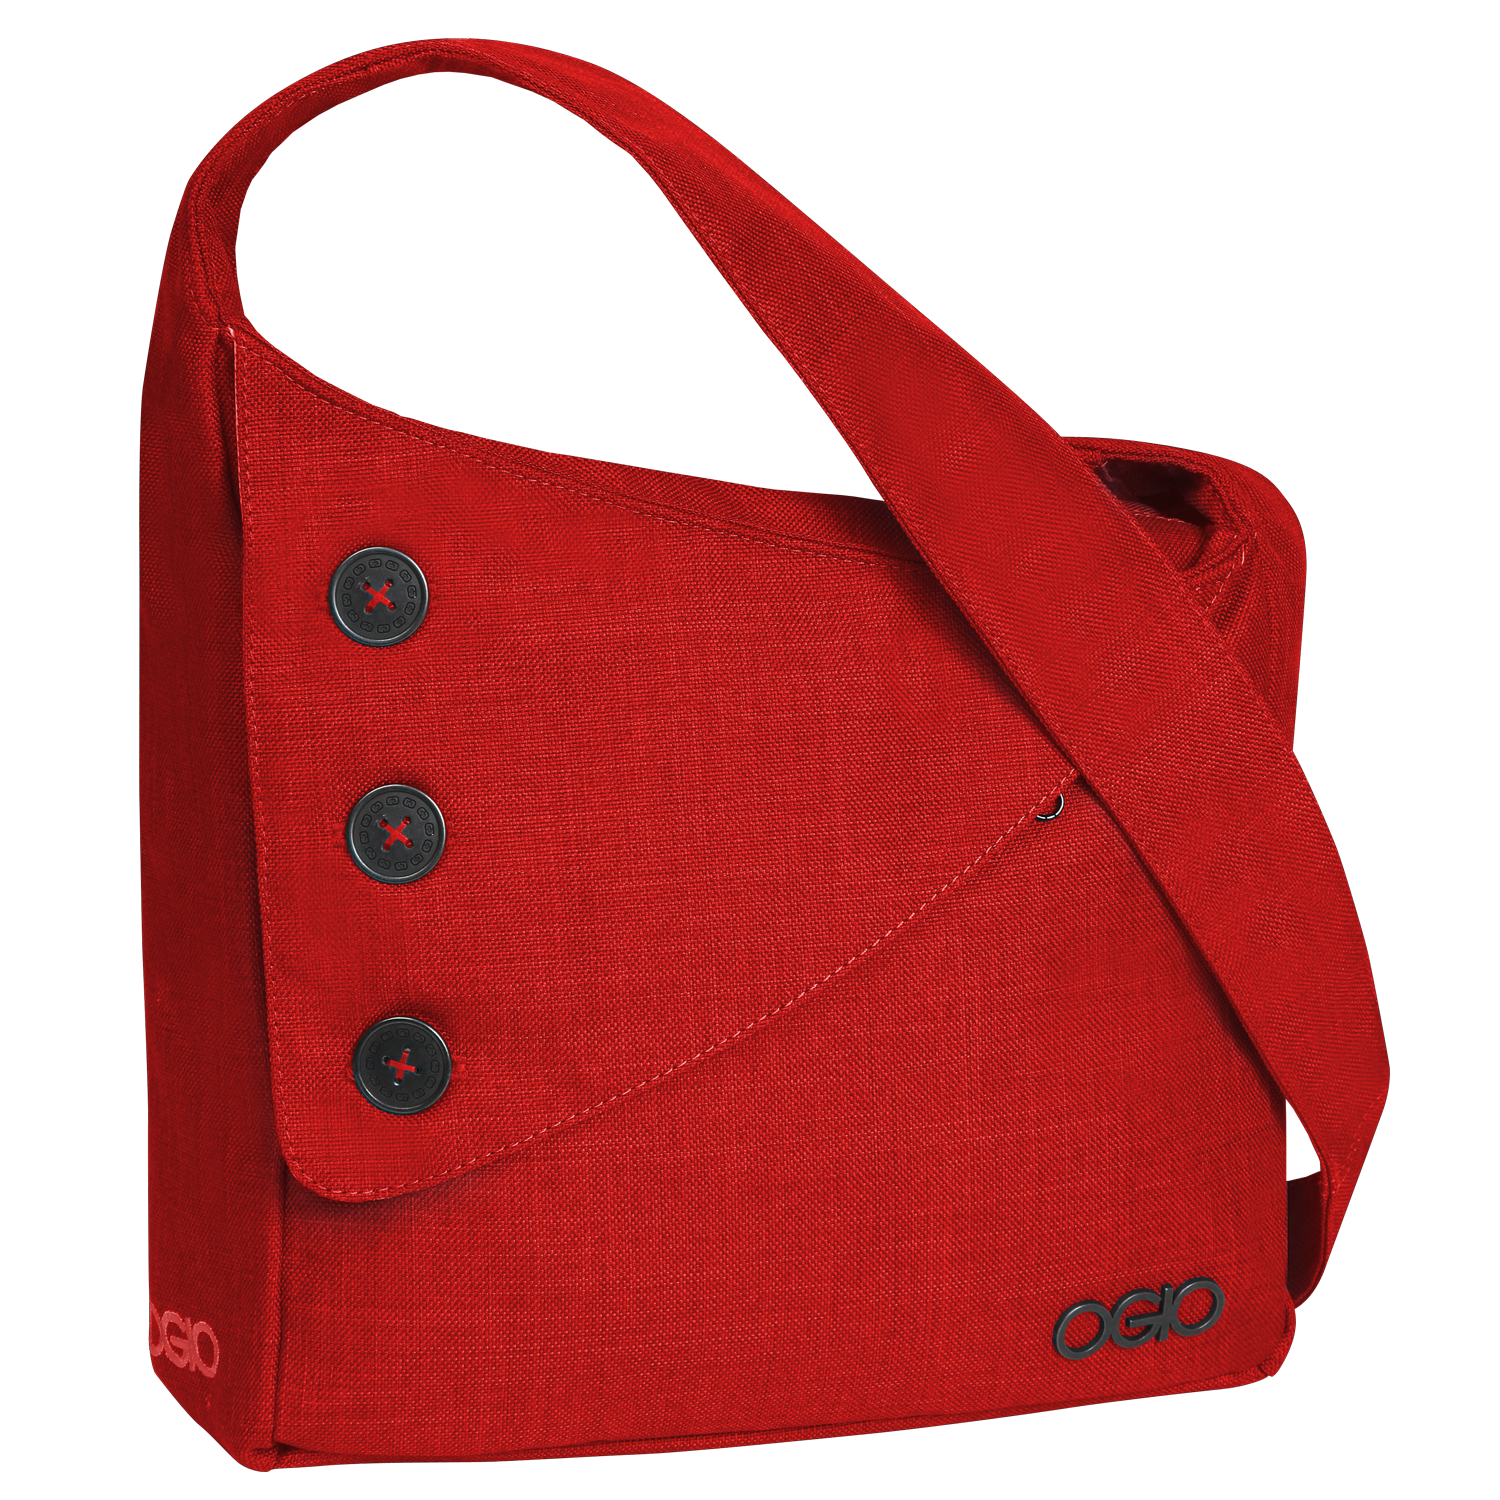 Rote Damentasche